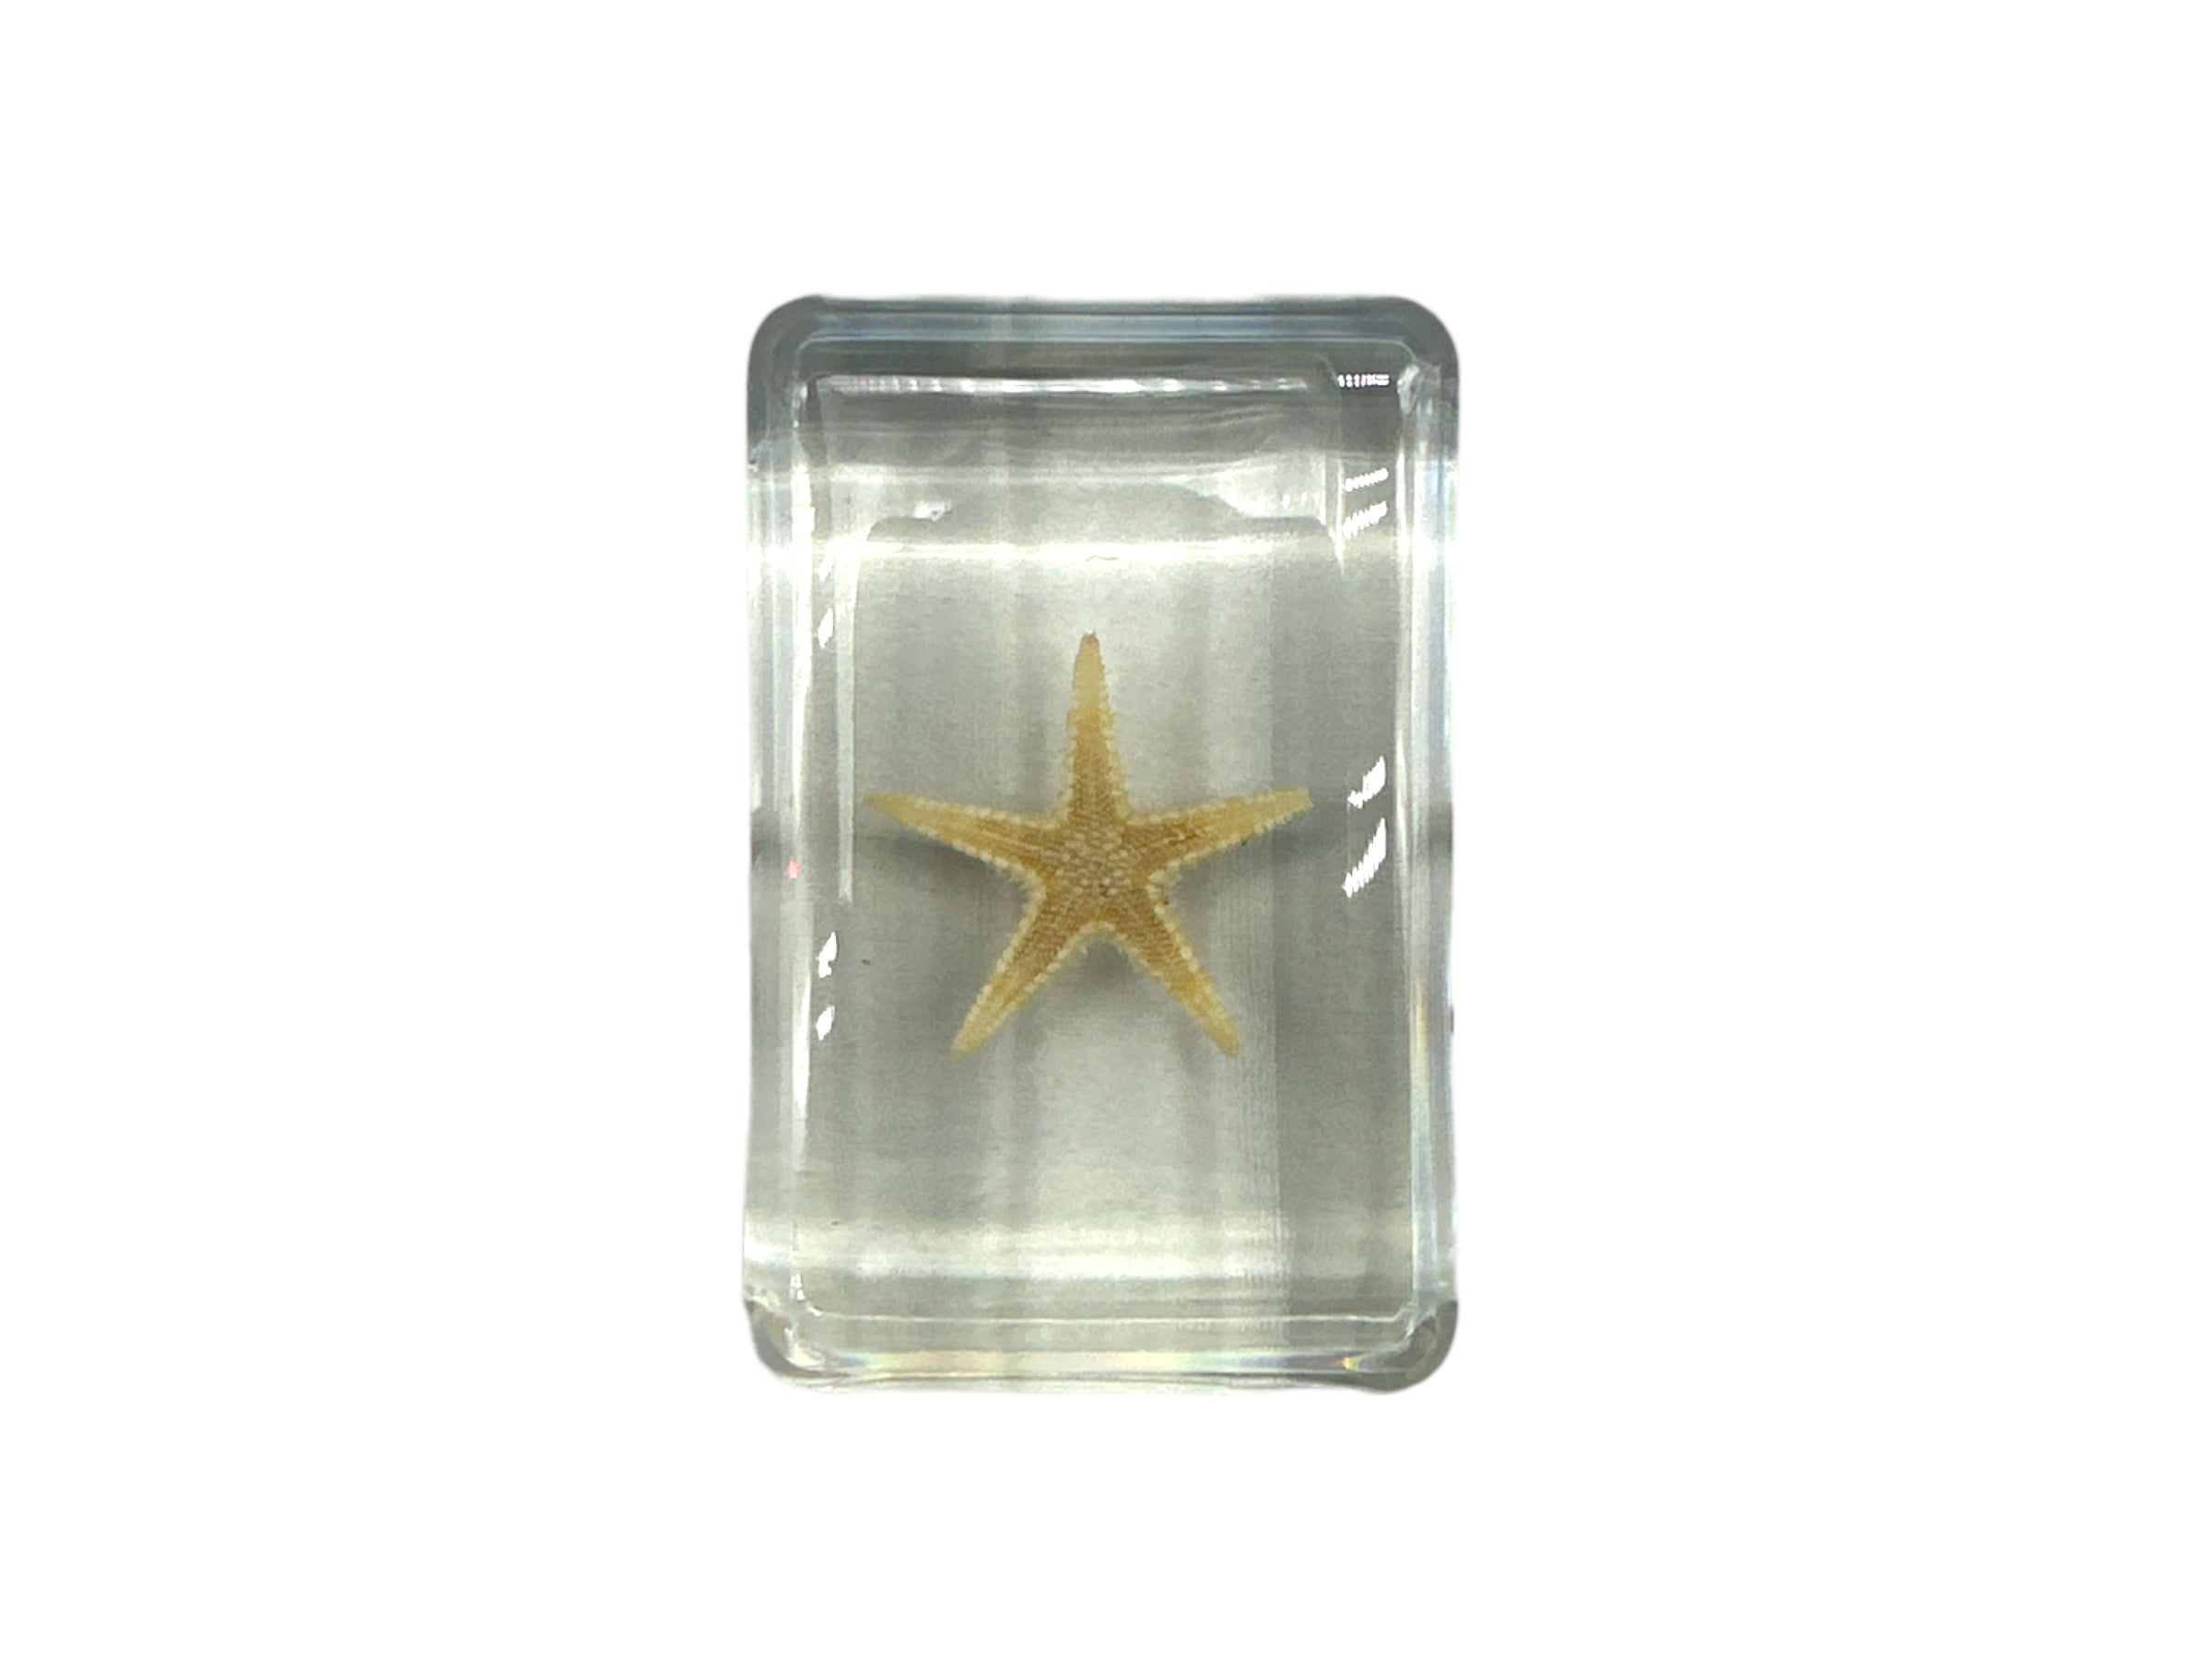 Starfish - Specimen In Resin